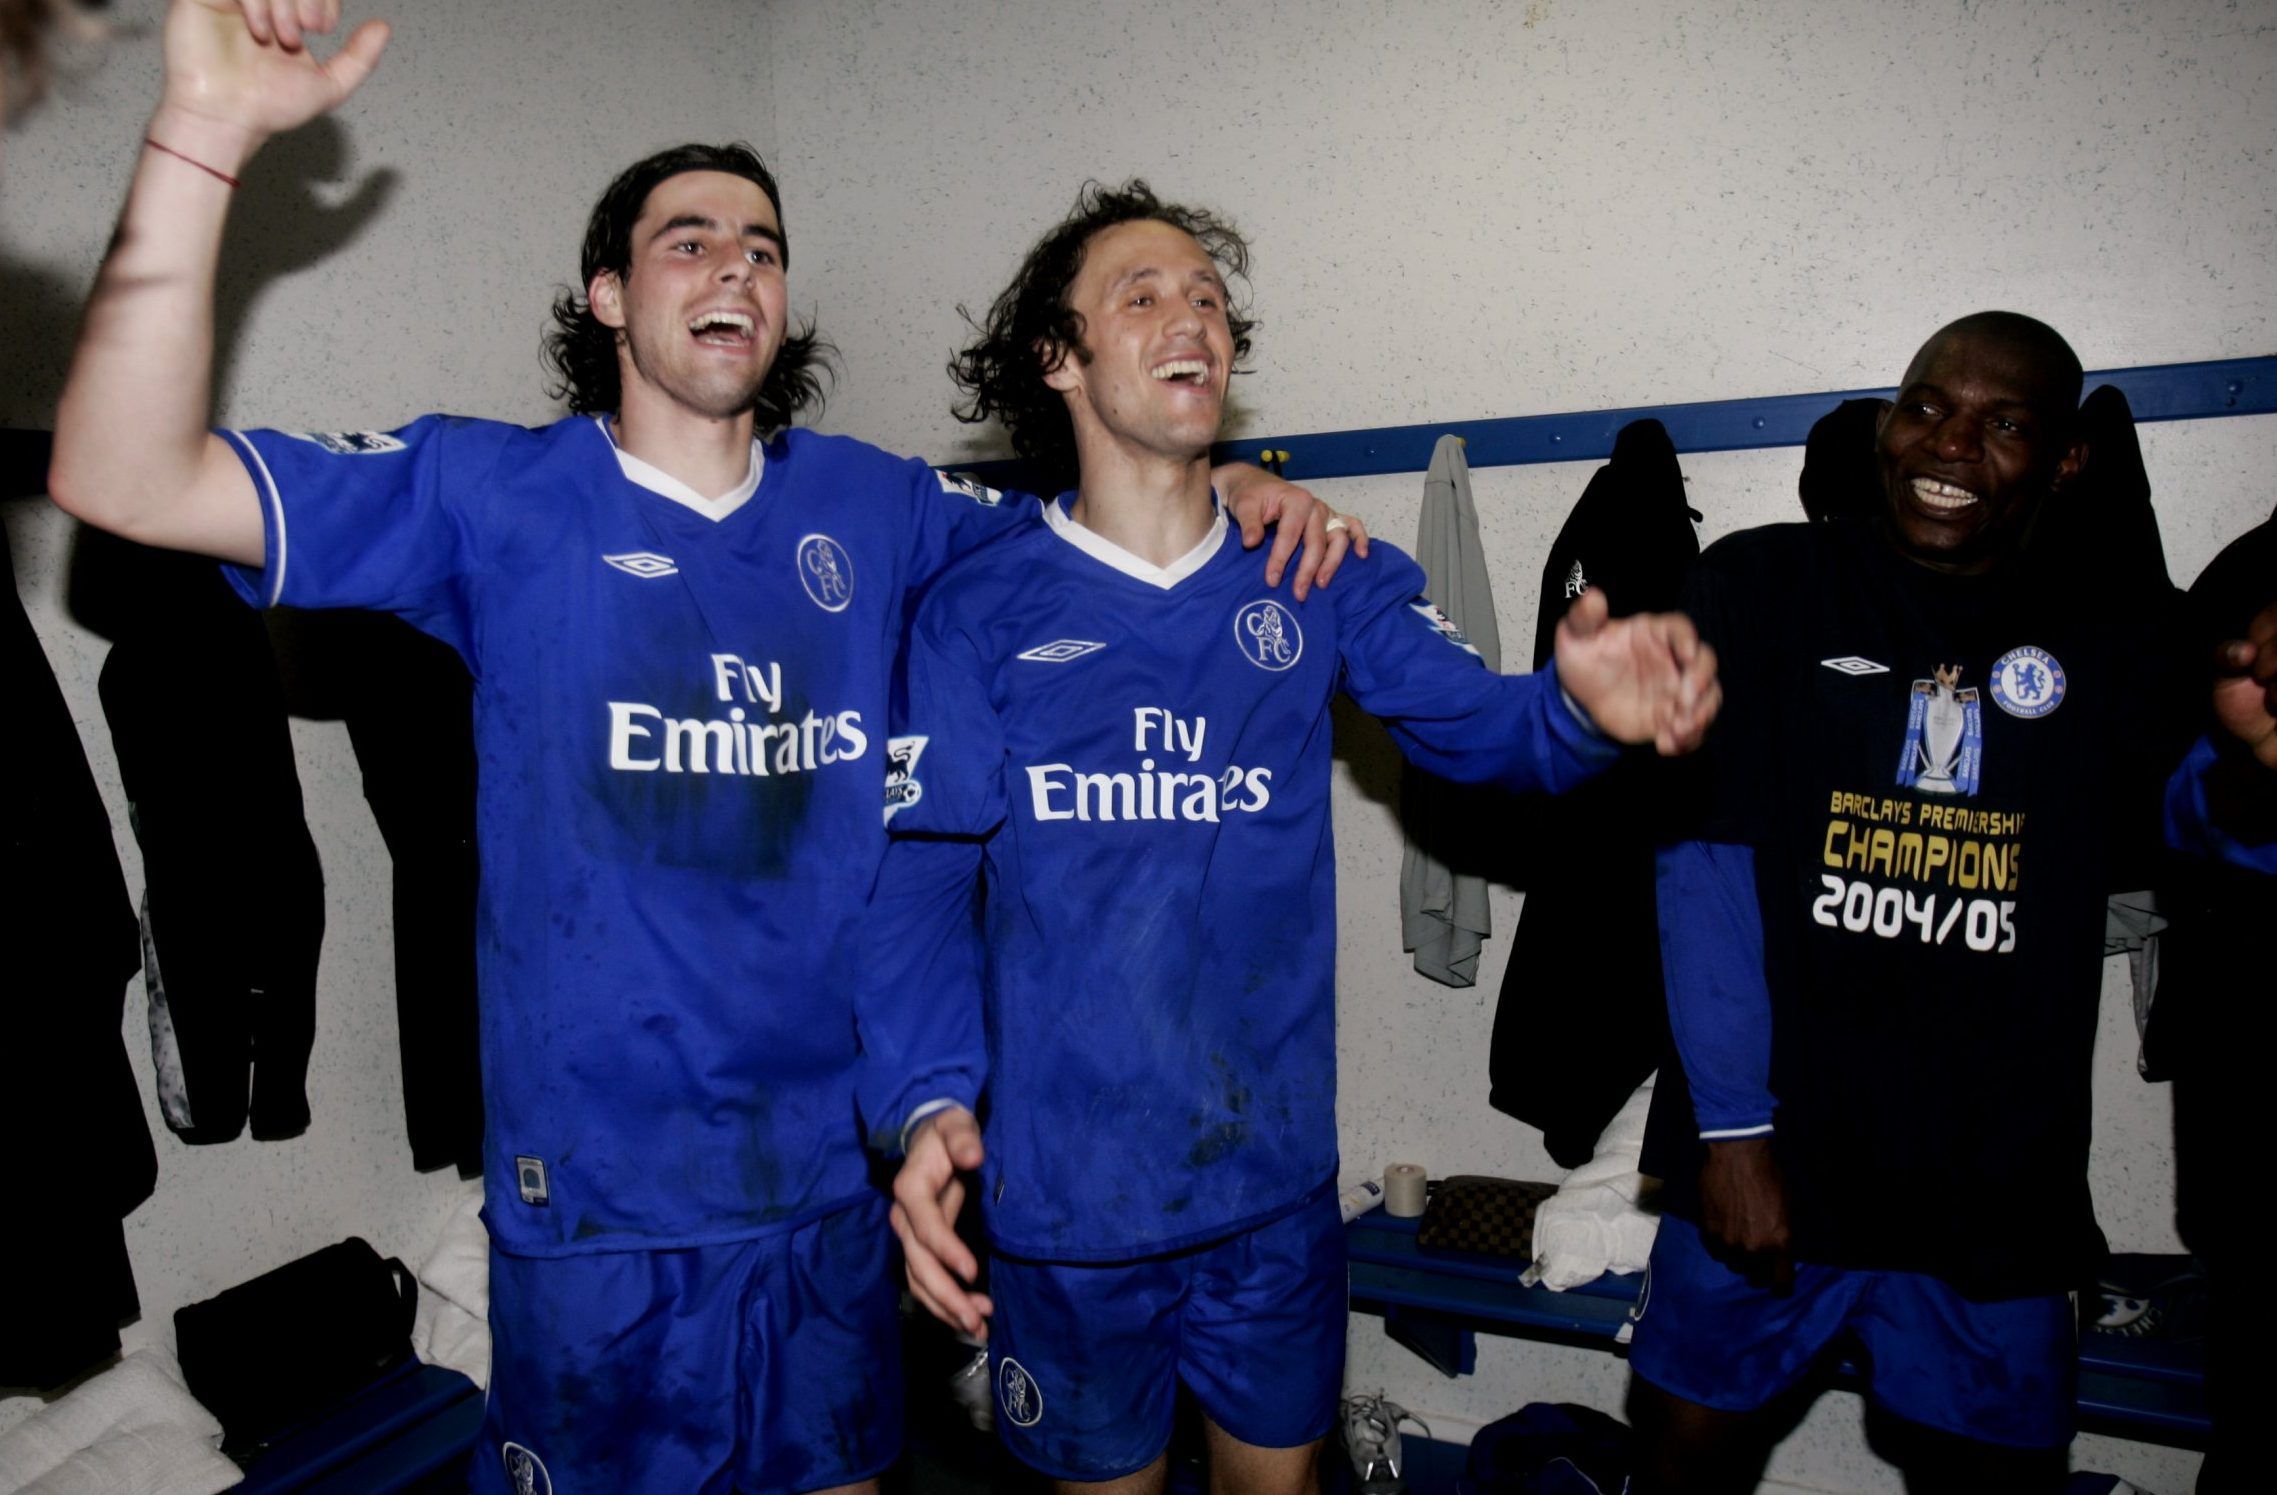 Ricardo Carvalho celebrates in Chelsea's changing room